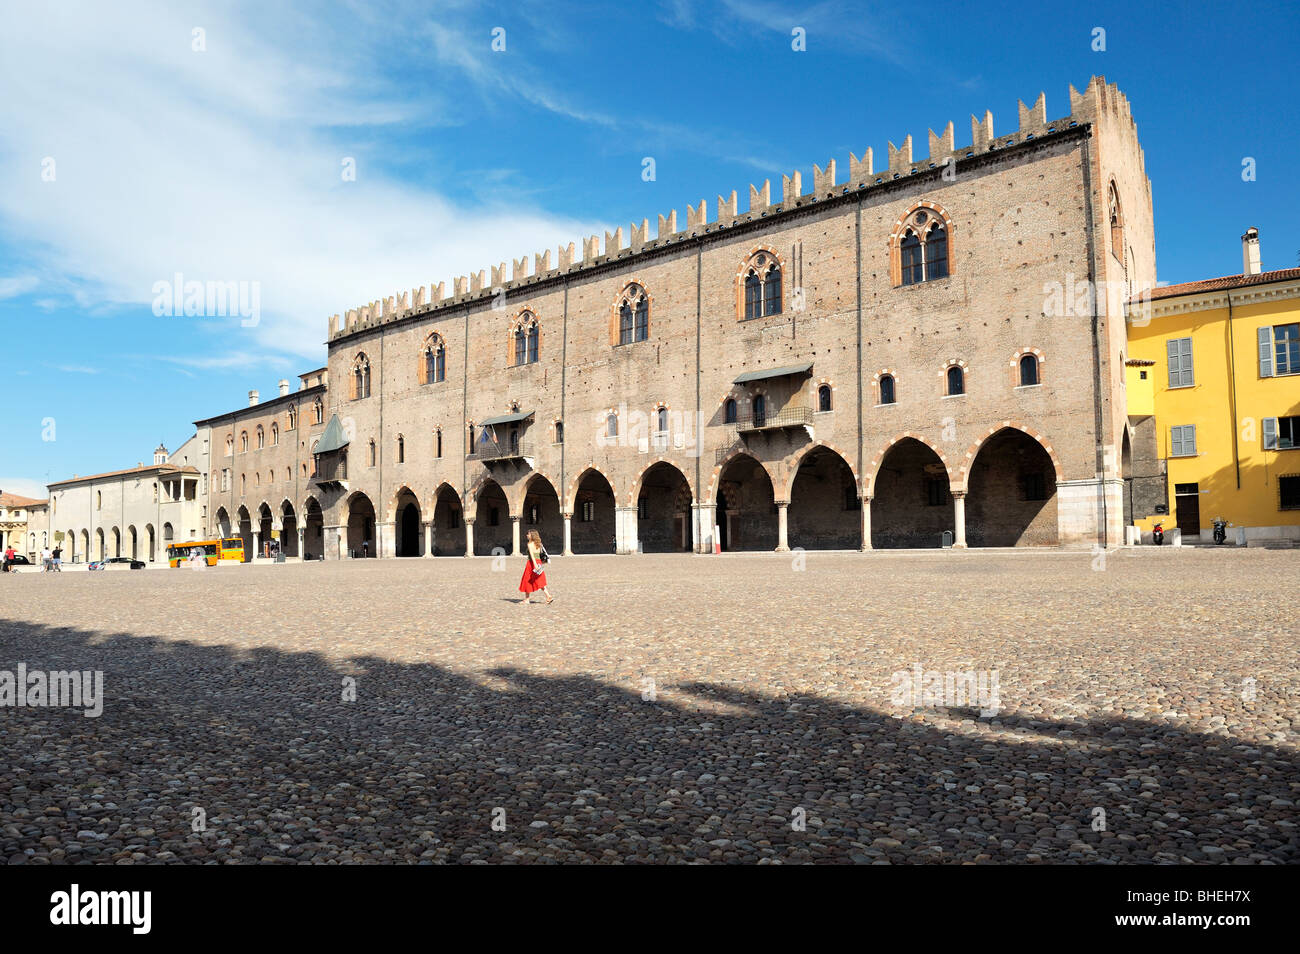 Il medievale Palazzo Ducale, il Palazzo Ducale, attraversata la piazza Sordello nella città medievale di Mantova, Lombardia, Italia. Foto Stock